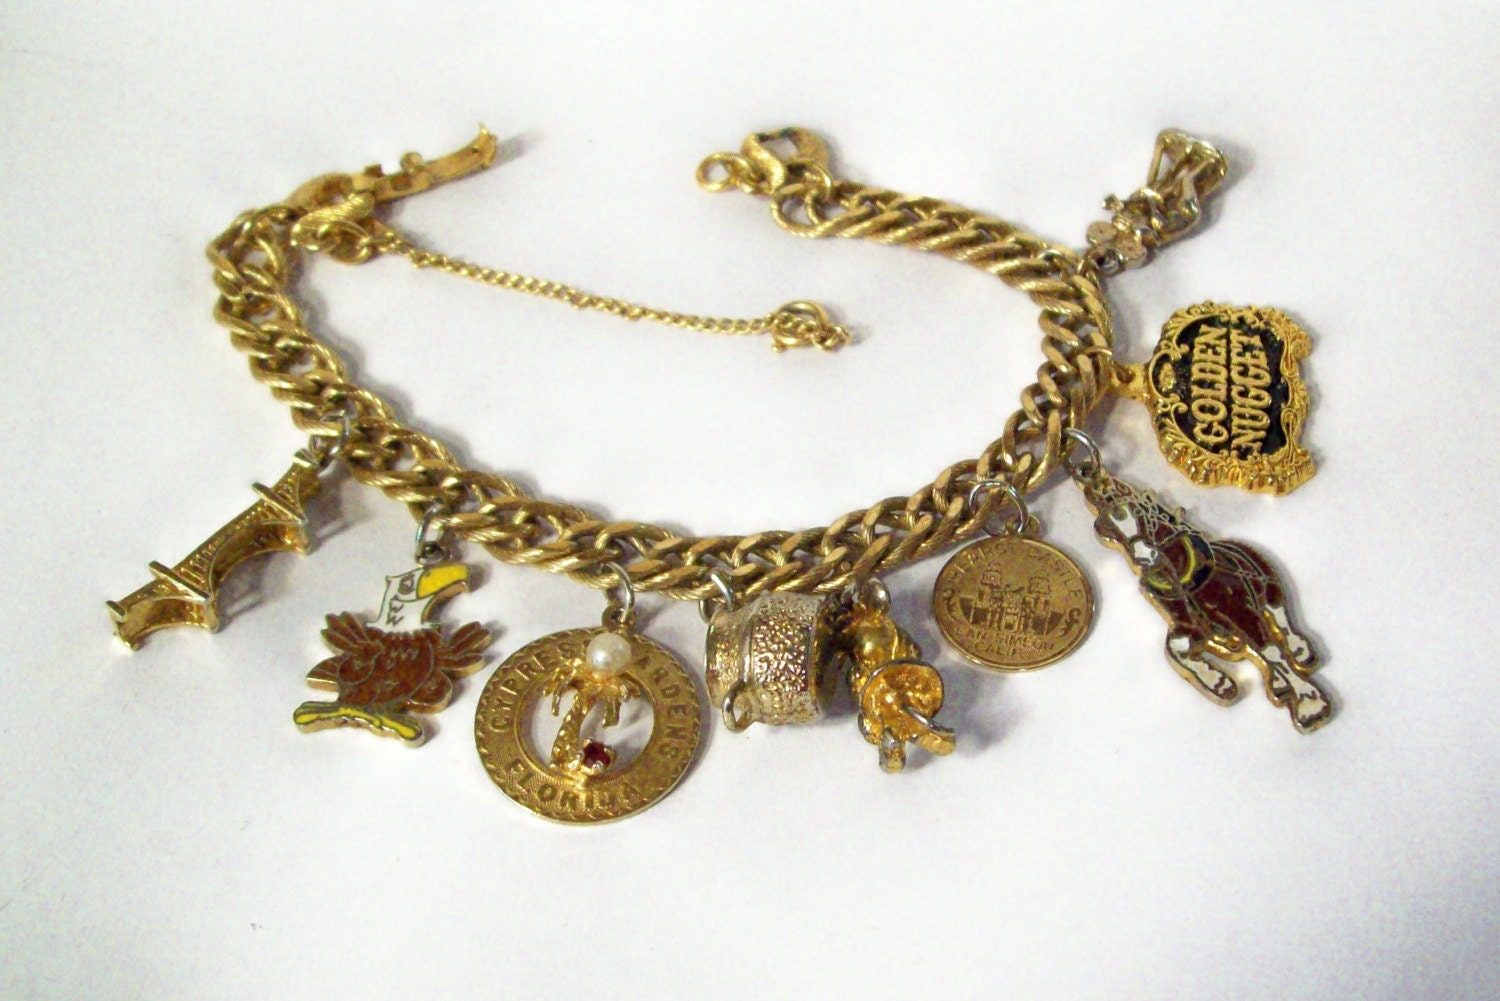 Vintage Monet goldtone/gold filled charm bracelet golden